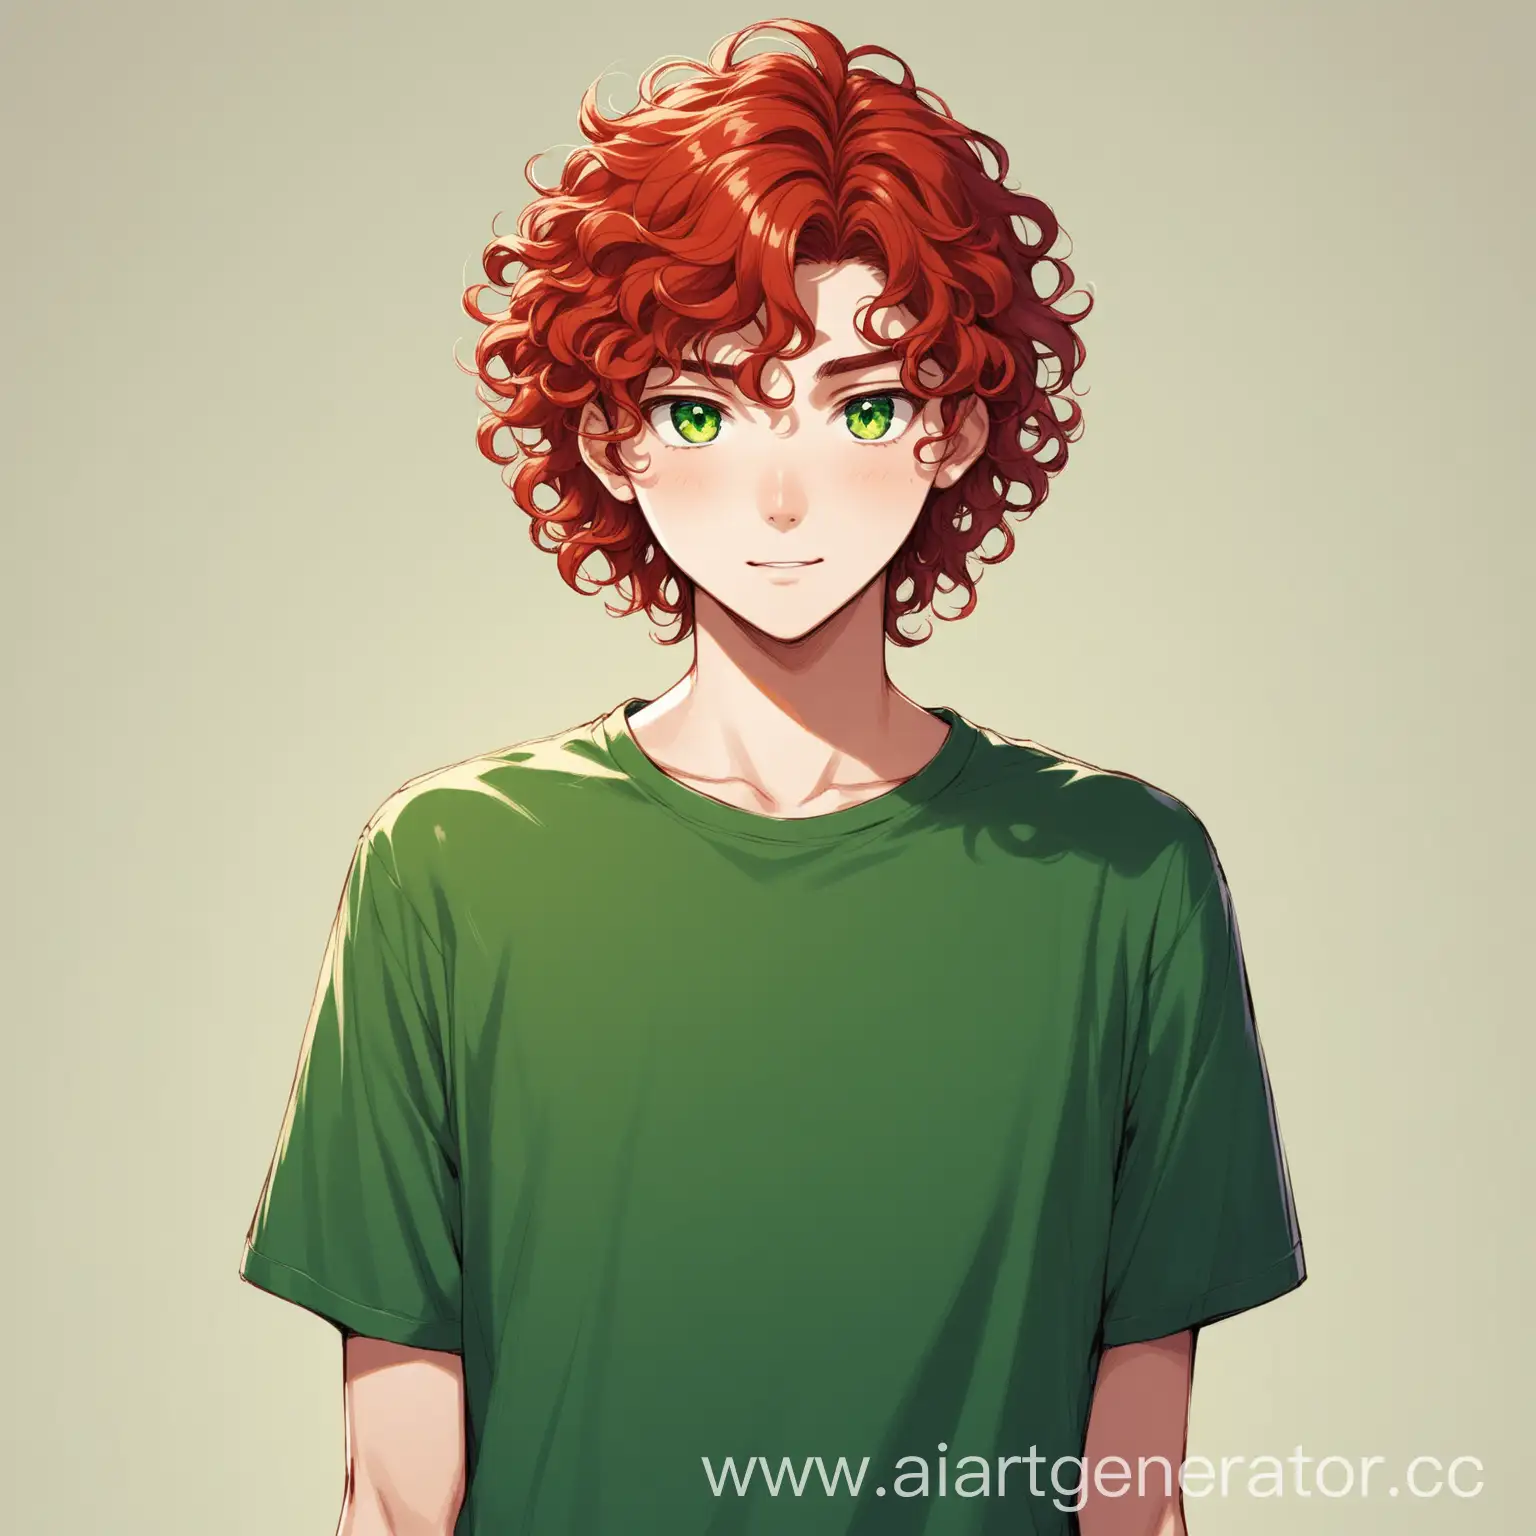 высокий молодой парень подросток, рыжие густые и пышные волосы средней длинны, зелёные глаза